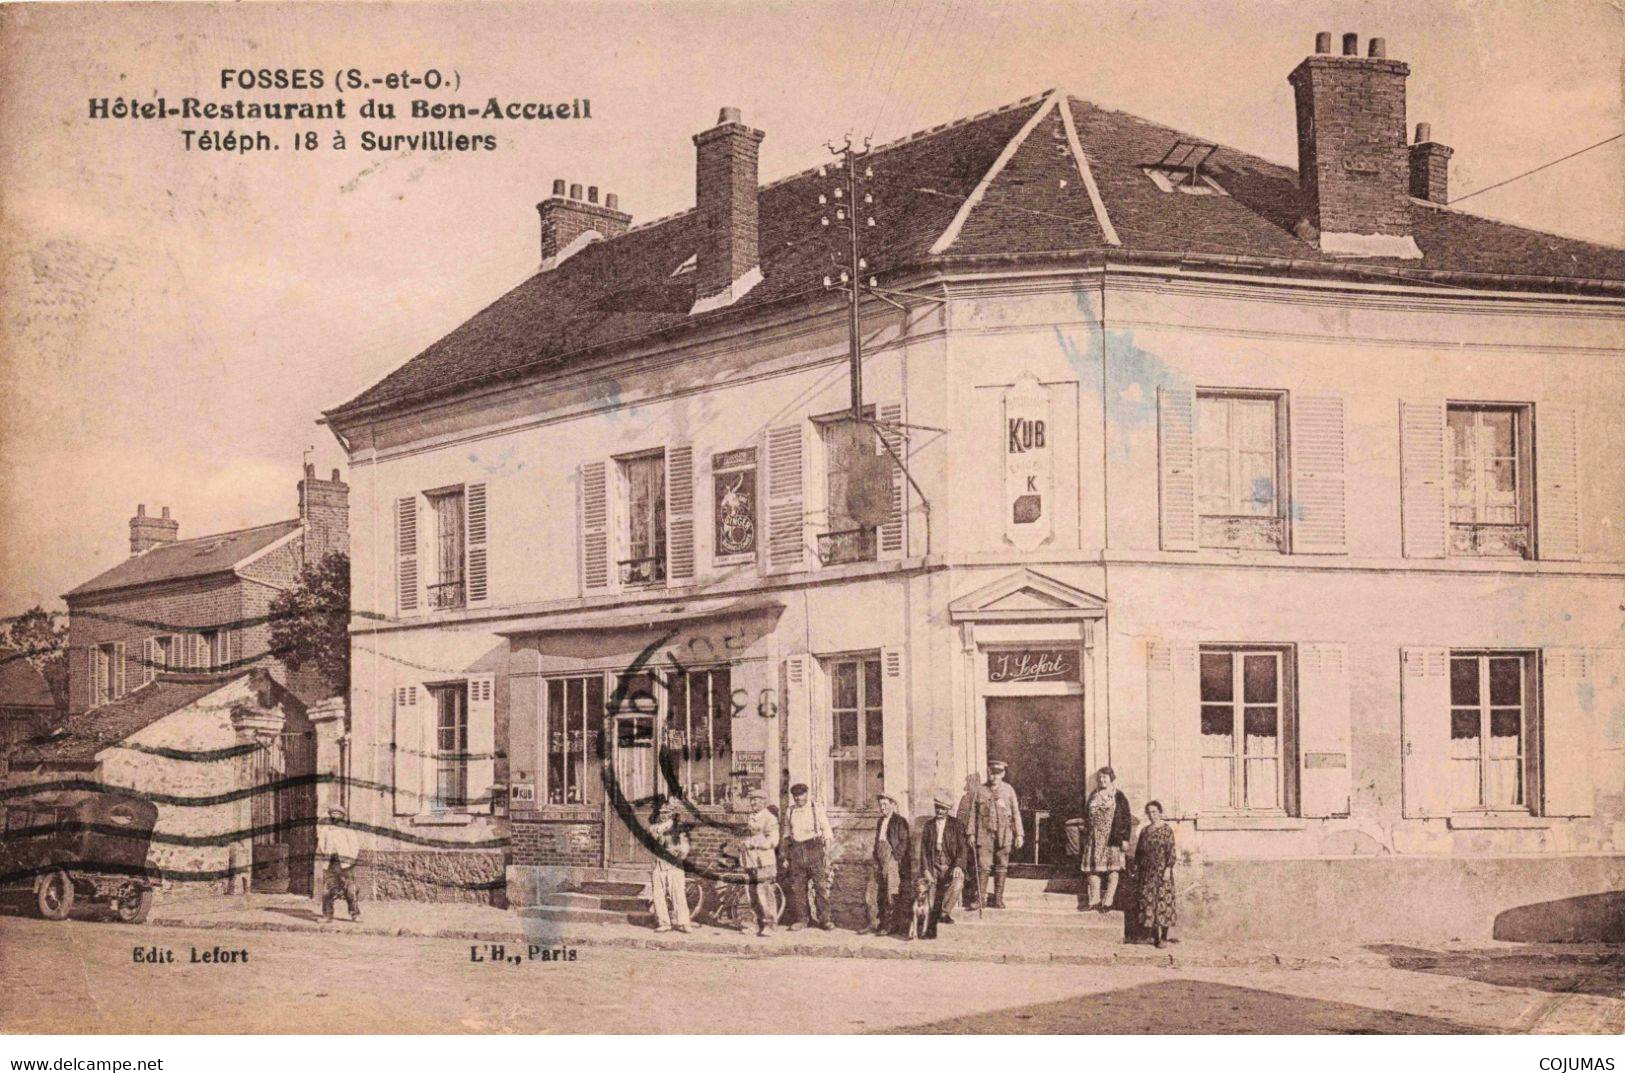 95 - FOSSES - S02496 - Hôtel Restaurant Du Bon Accueil - Survilliers - Lefort - L2 - Fosses